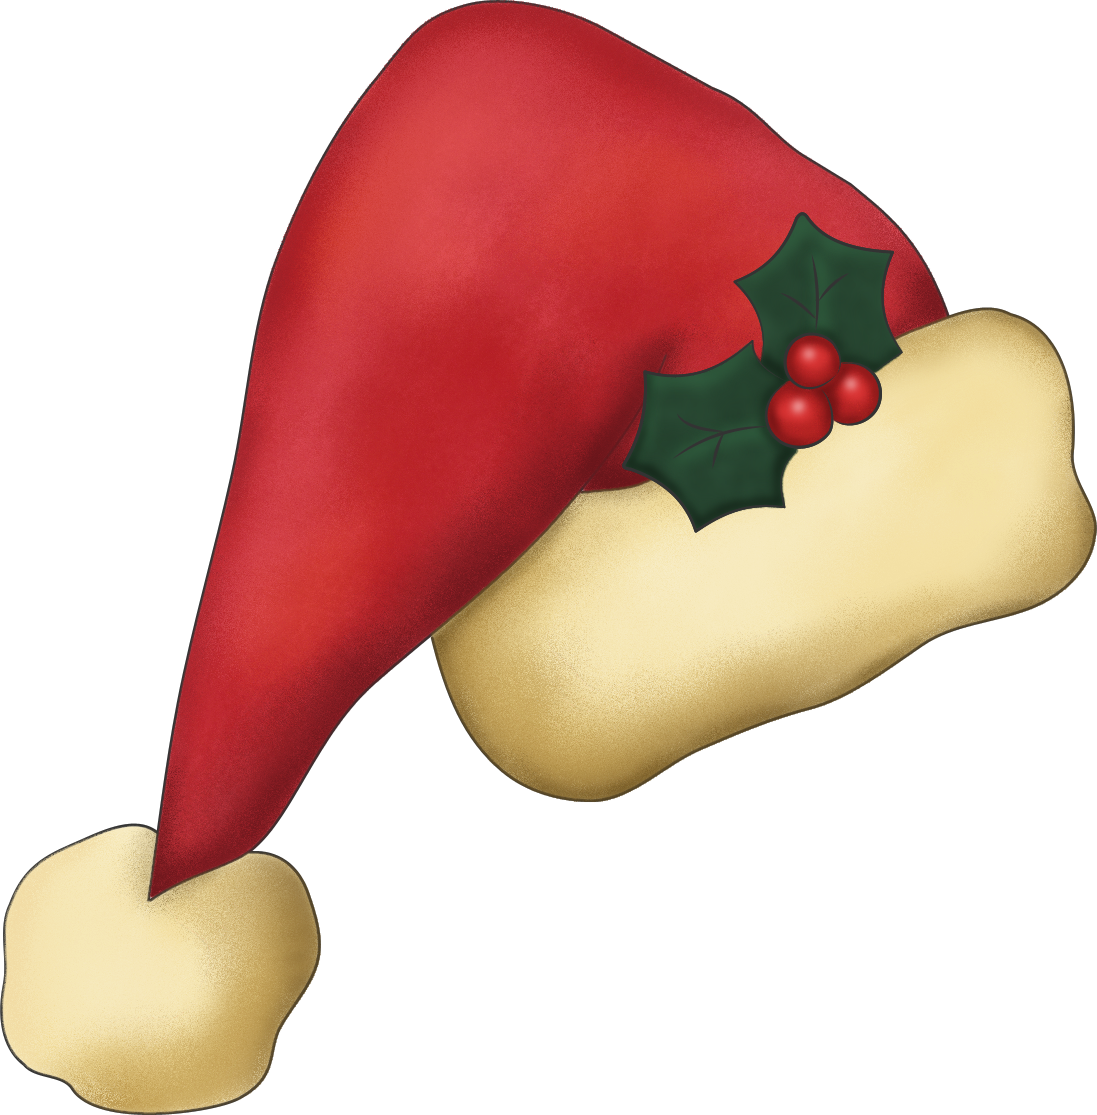 Santa Claus hat PNG transparent image download, size: 600x455px